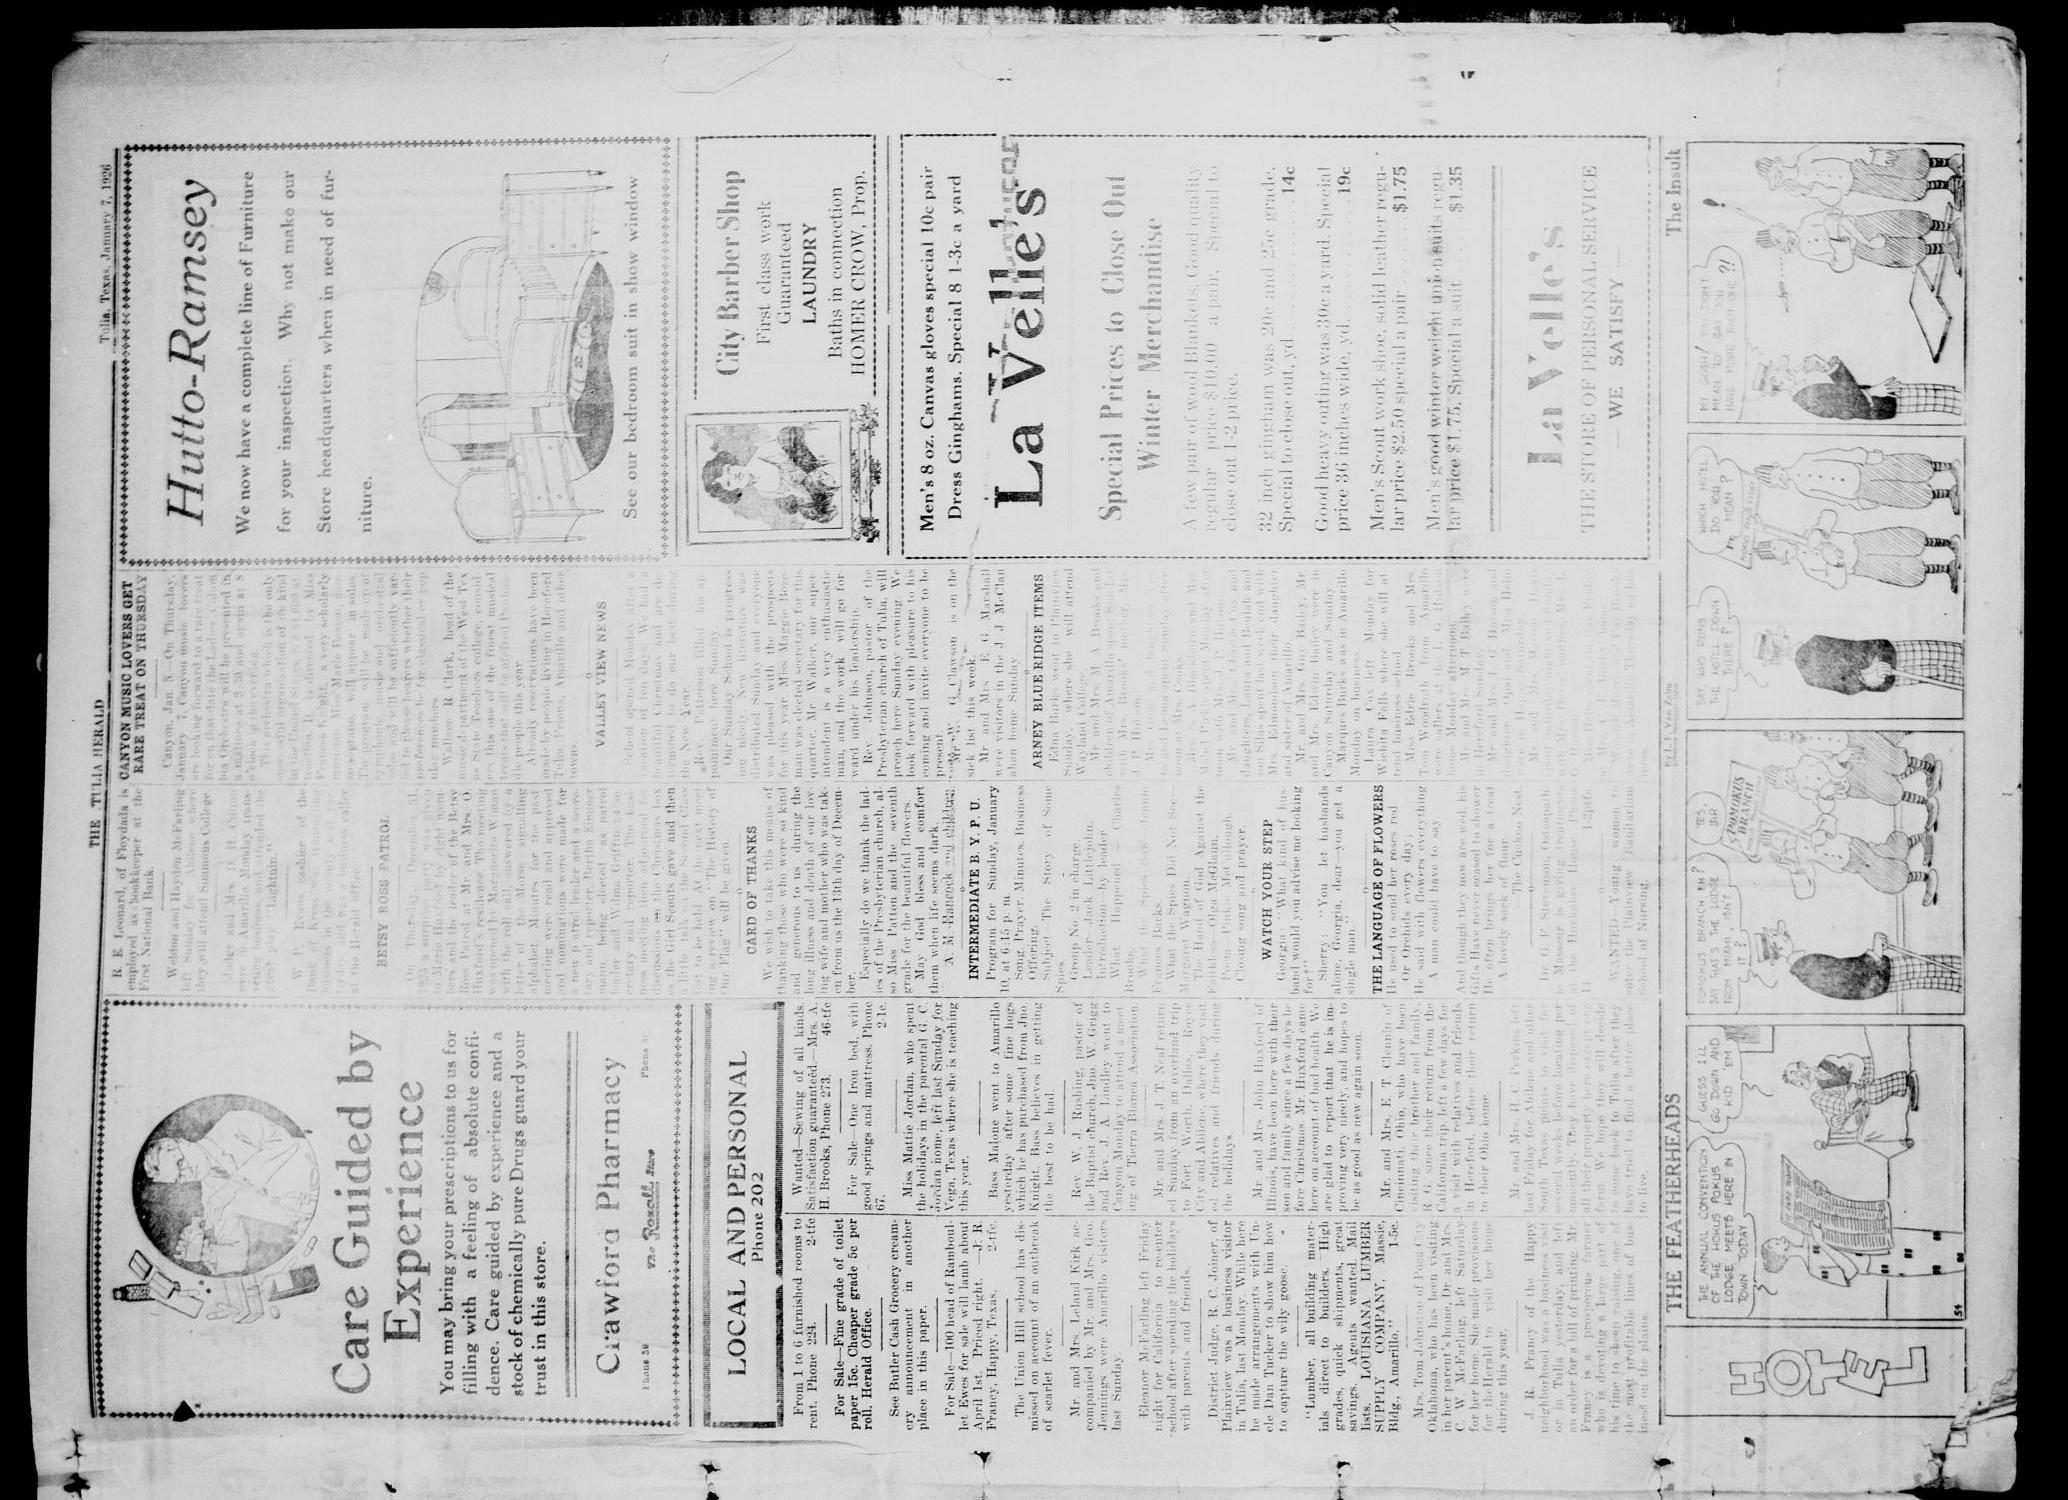 The Tulia Herald (Tulia, Tex), Vol. 17, No. 2, Ed. 1, Thursday, January 7, 1926
                                                
                                                    19
                                                